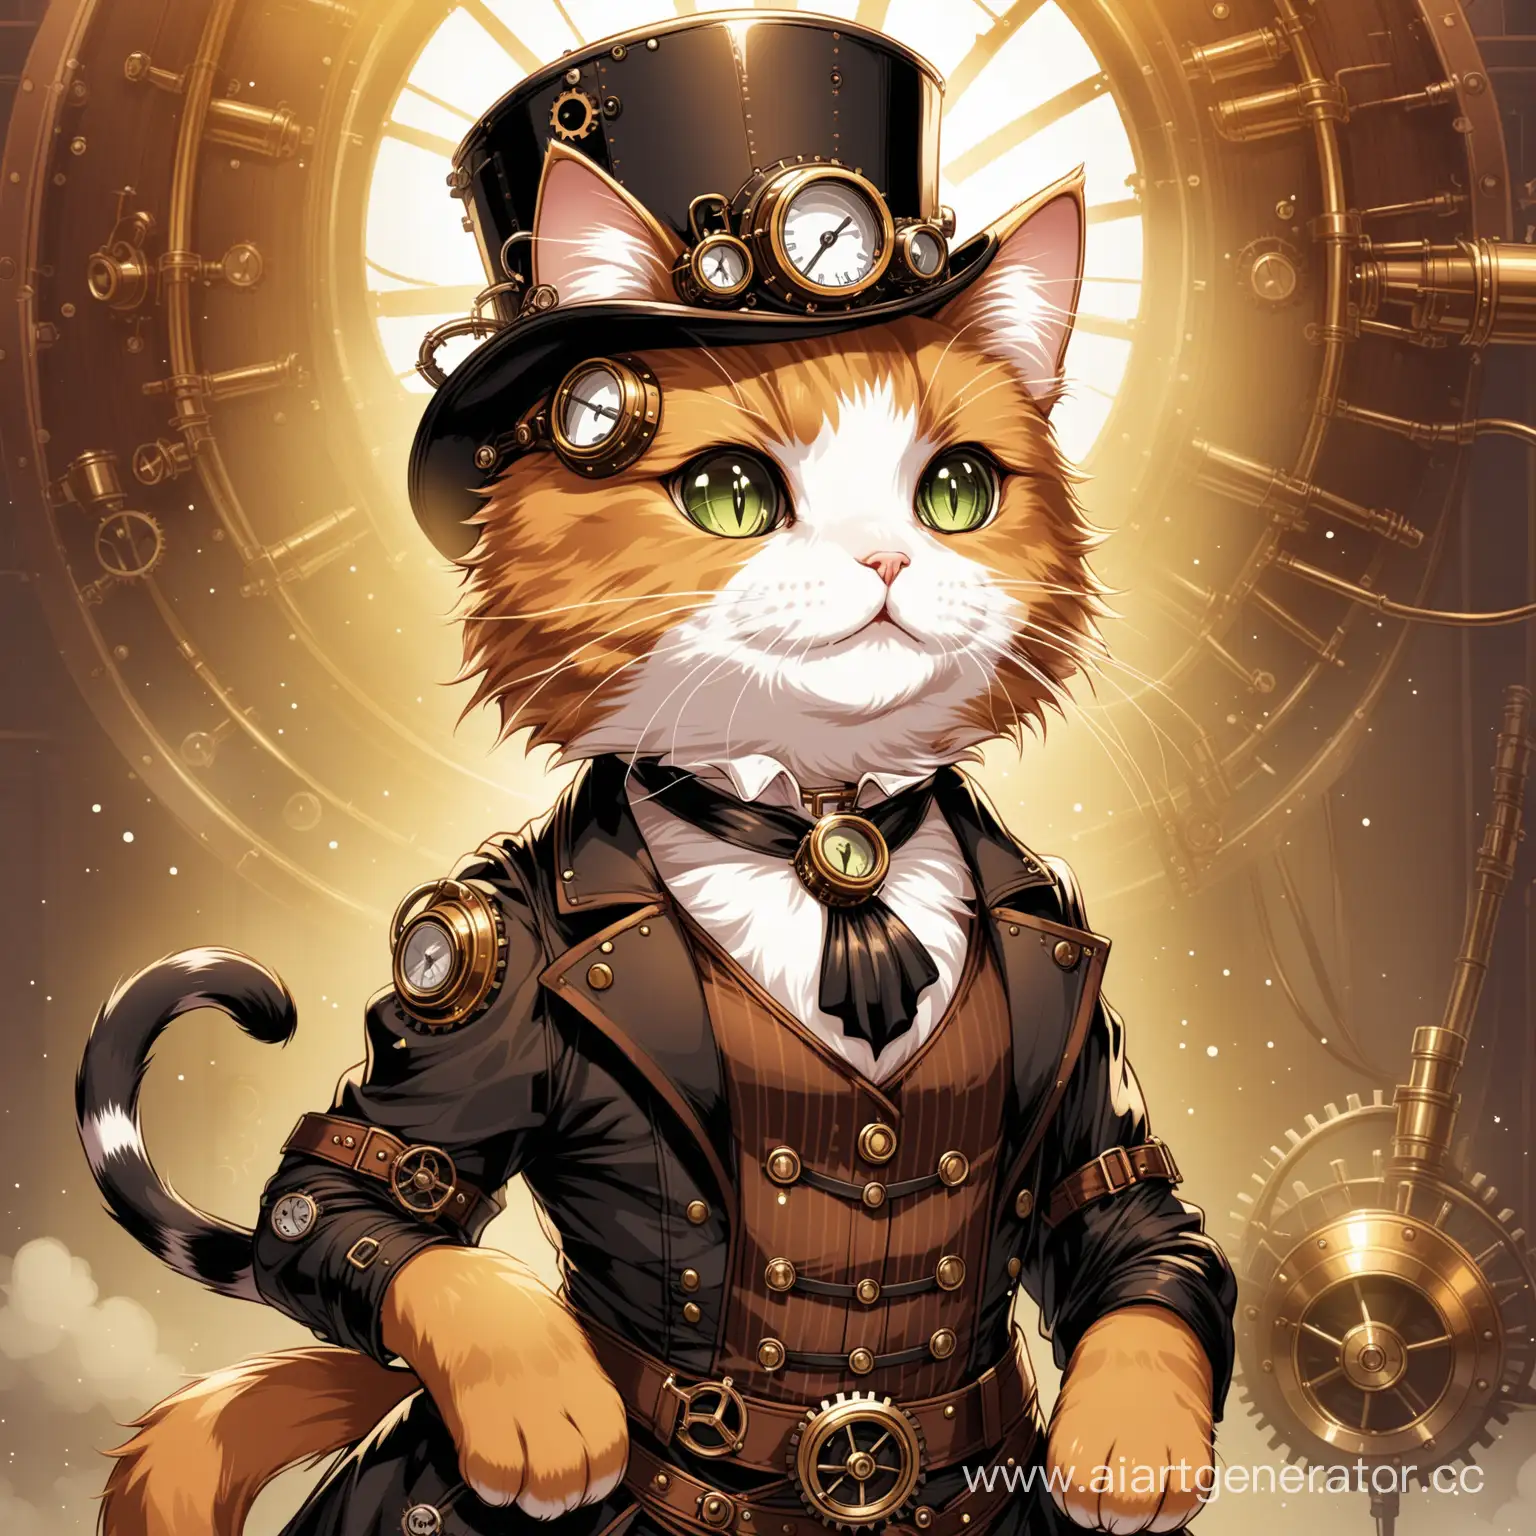 Steampunk cat

